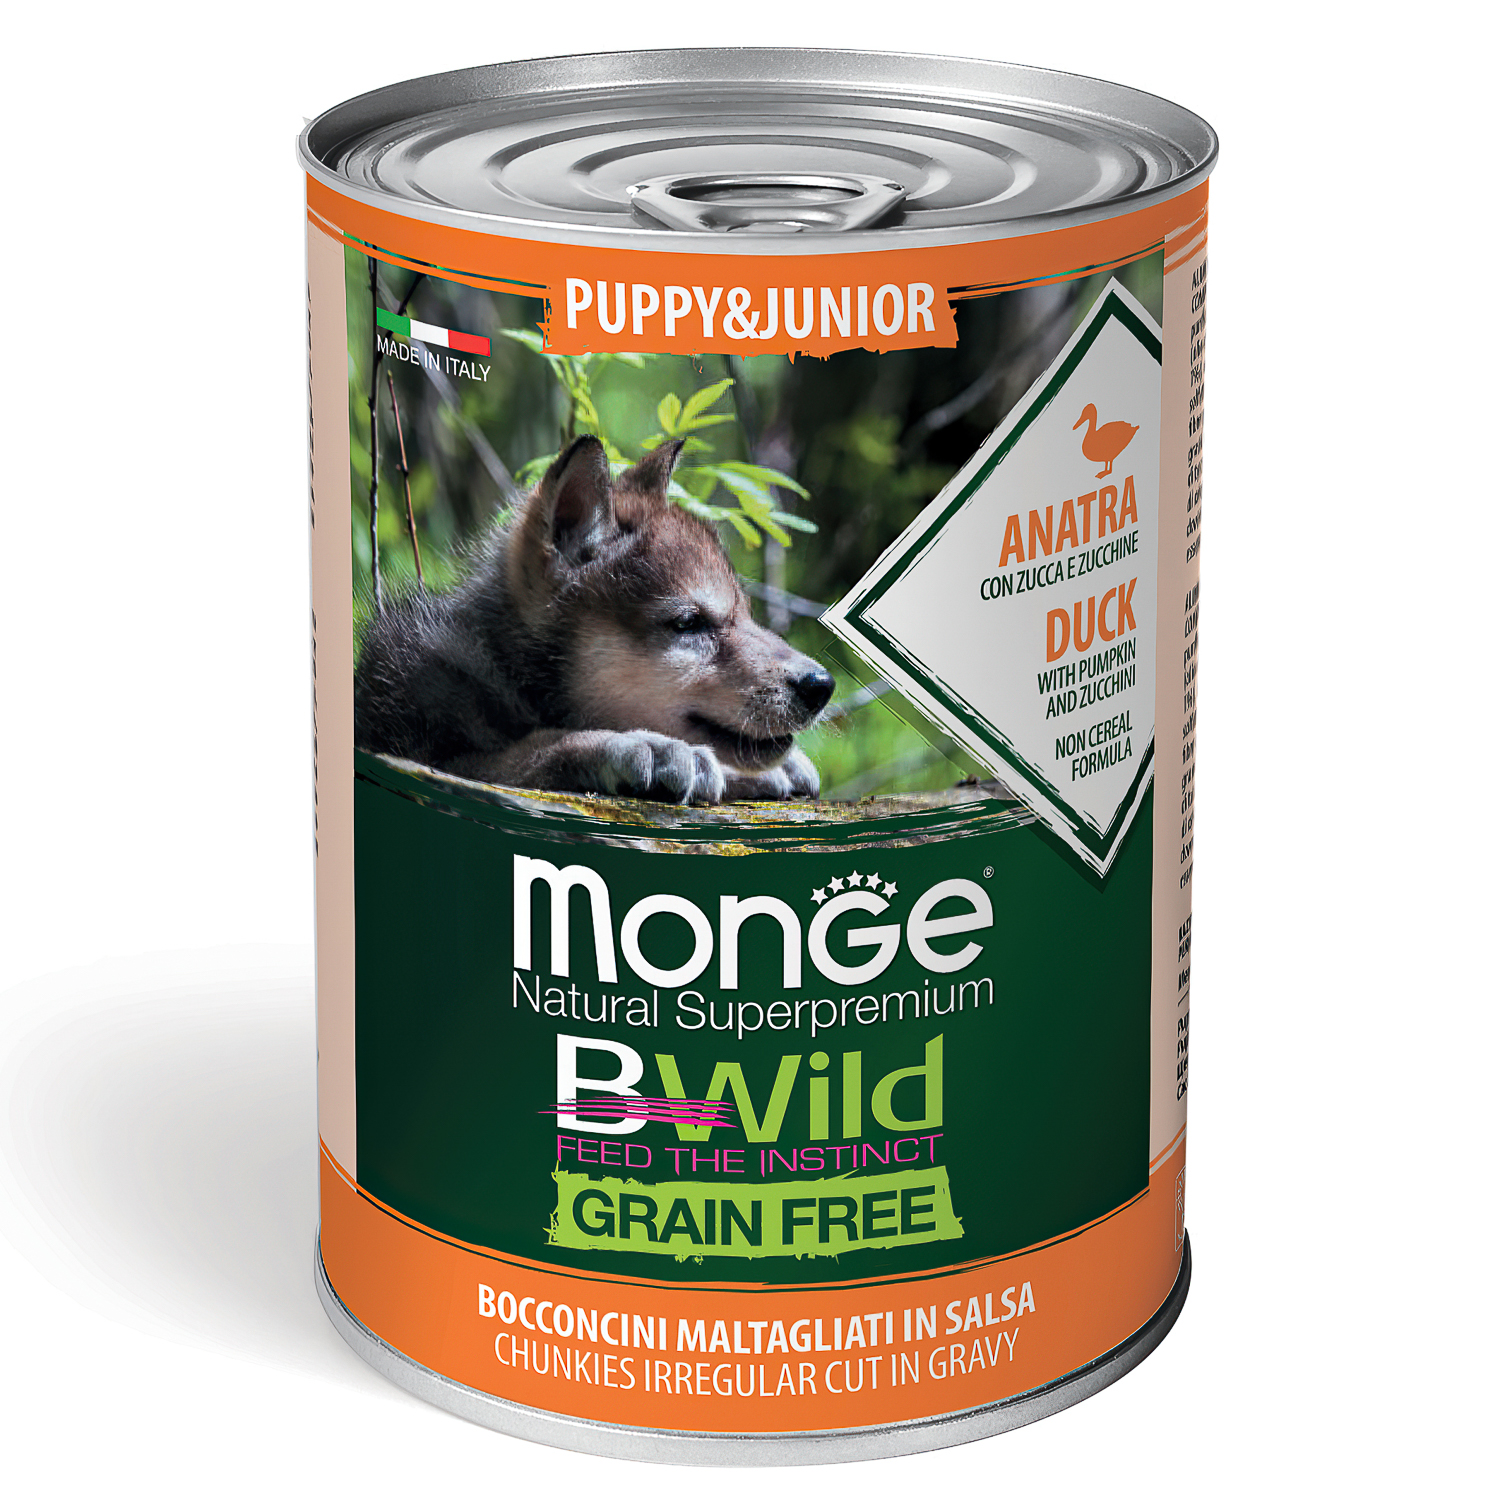 Monge Dog BWild GRAIN FREE Puppy&Junior беззерновые консервы из утки с тыквой и кабачками для щенков всех пород 400г